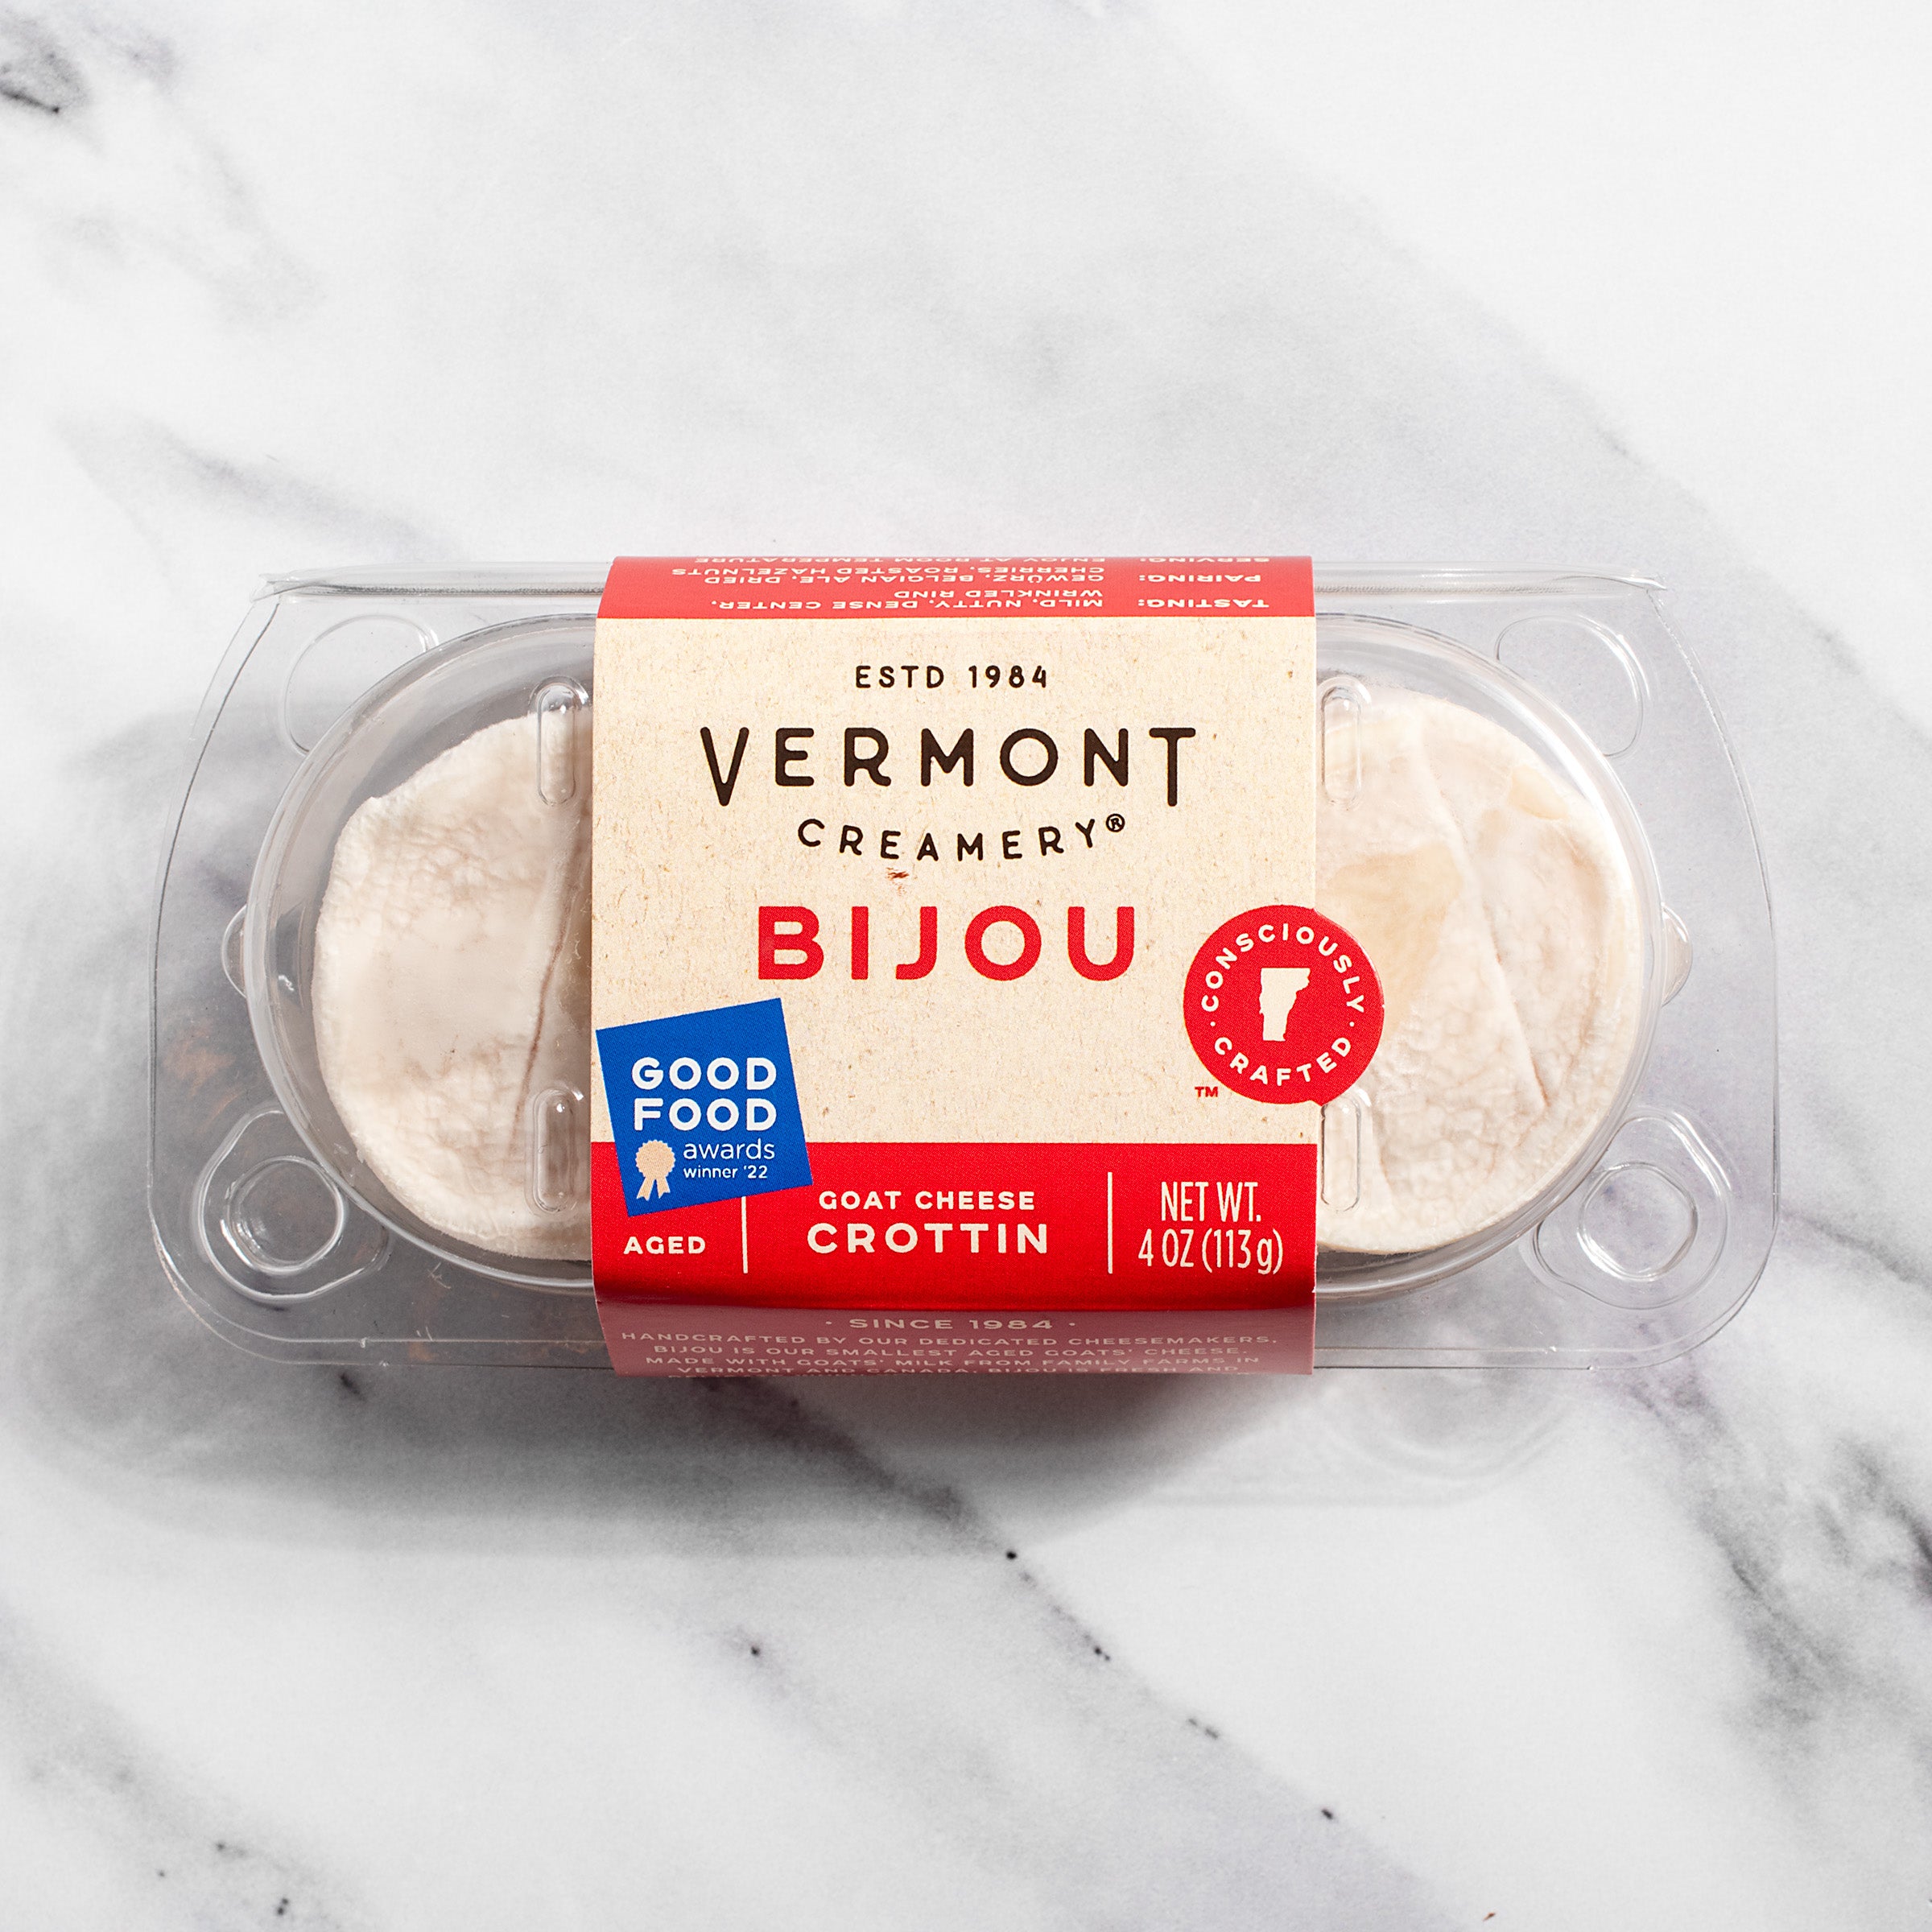 Bijou by Vermont Creamery igourmet –